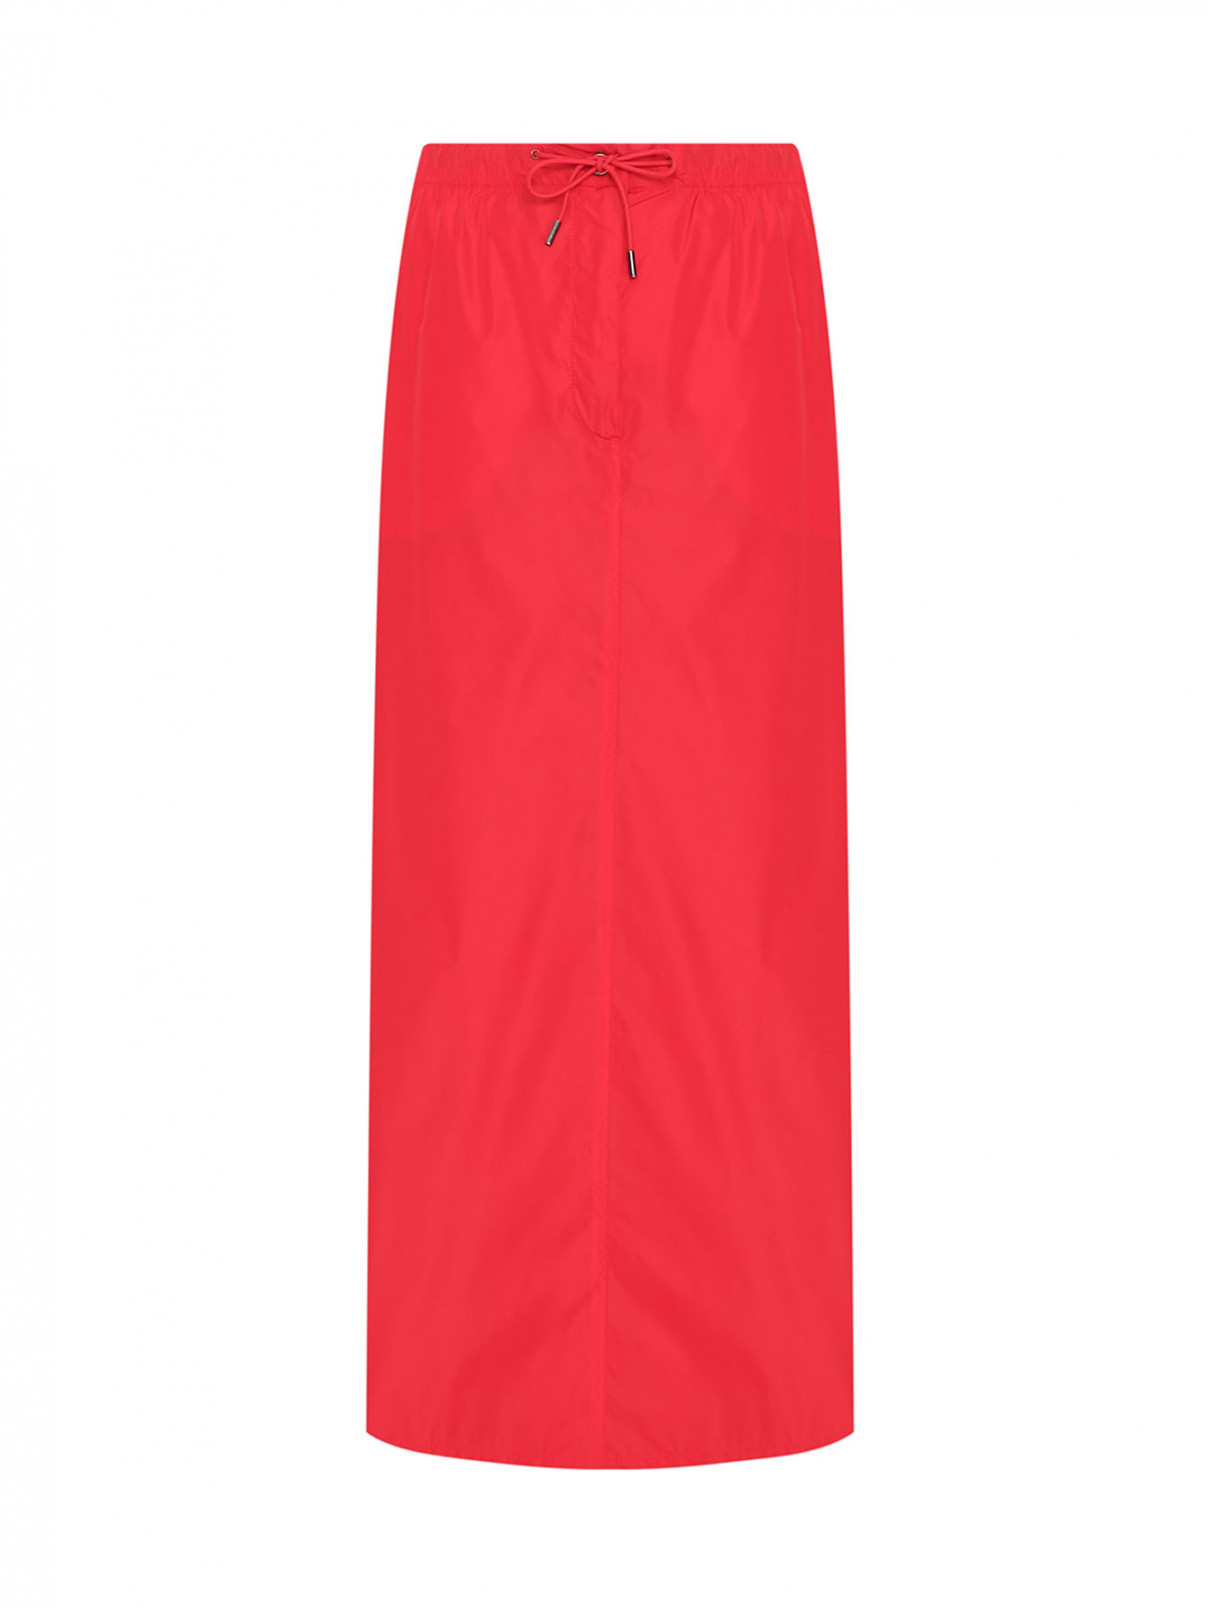 Однотонная юбка из нейлона на резинке с карманами Max Mara  –  Общий вид  – Цвет:  Красный